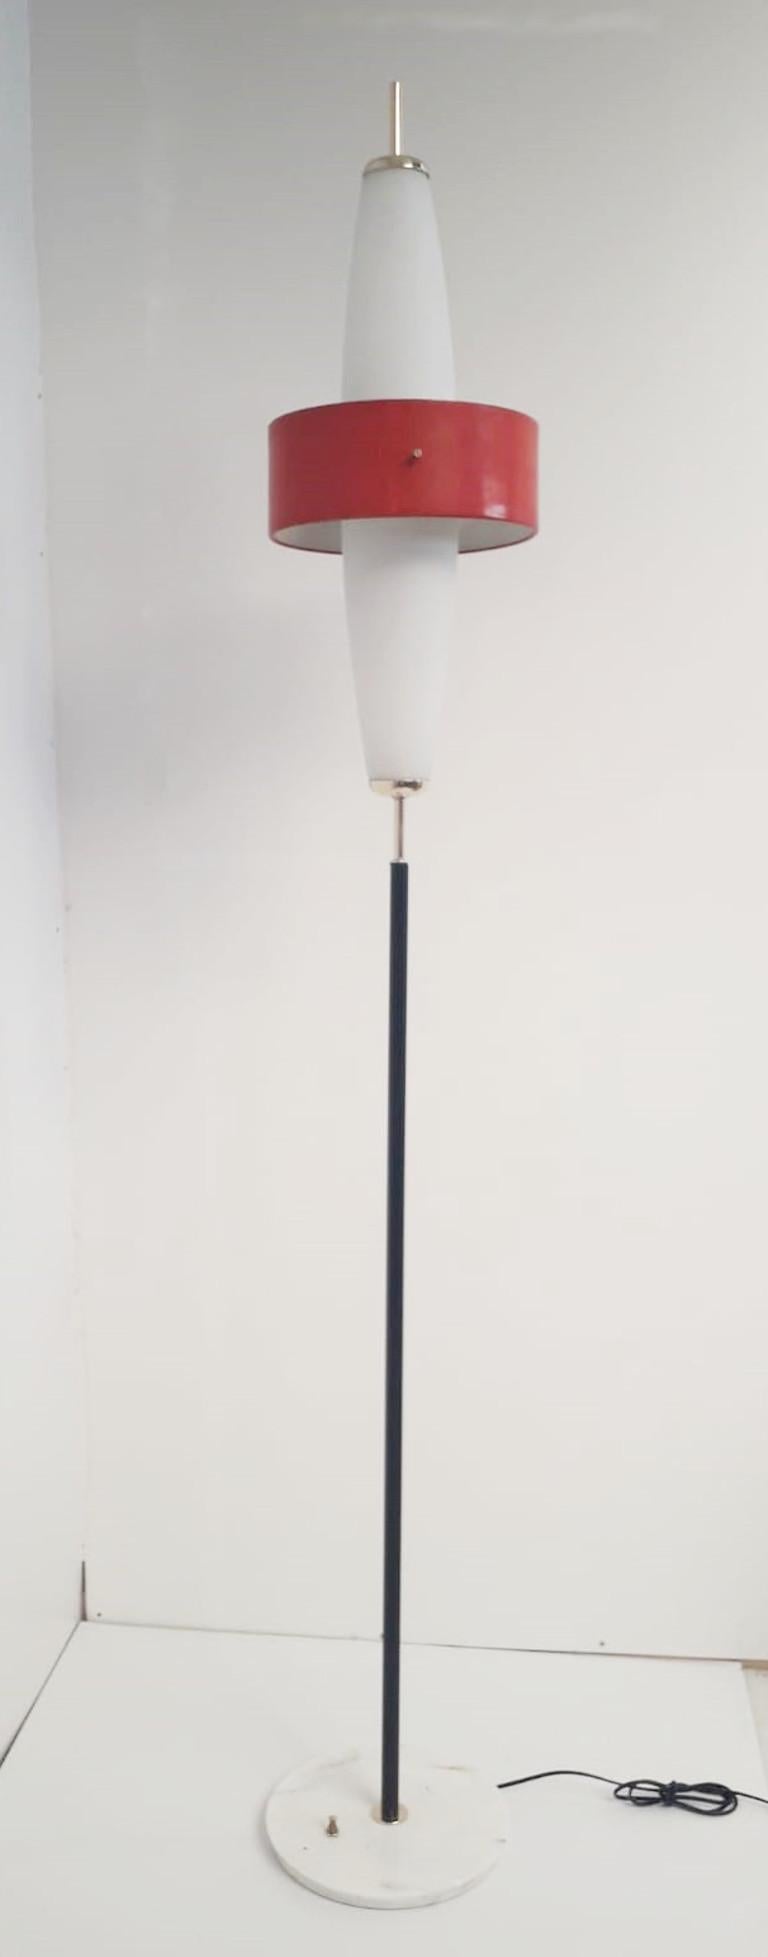 Seltenes Paar italienischer Fackel-Stehlampen mit mattierten Glasschirmen und rot emaillierten Metallbändern, montiert auf Marmorsockel / Entworfen von Stilnovo um 1950 / Hergestellt in Italien
Höhe: 80 Zoll/Durchmesser: 12 Zoll
1 Paar auf Lager in